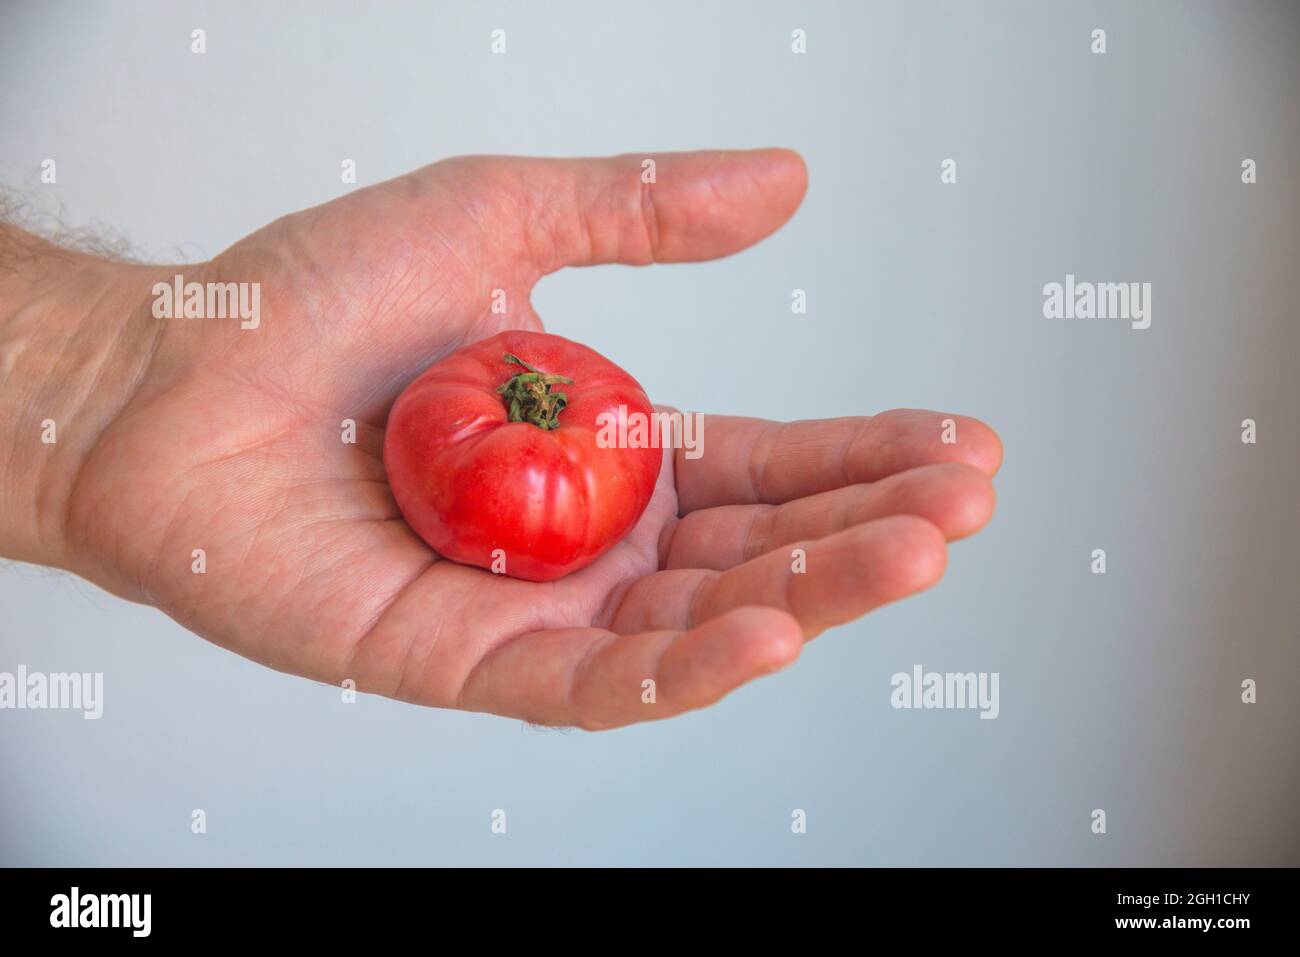 Hand holding a tiny tomato. Stock Photo